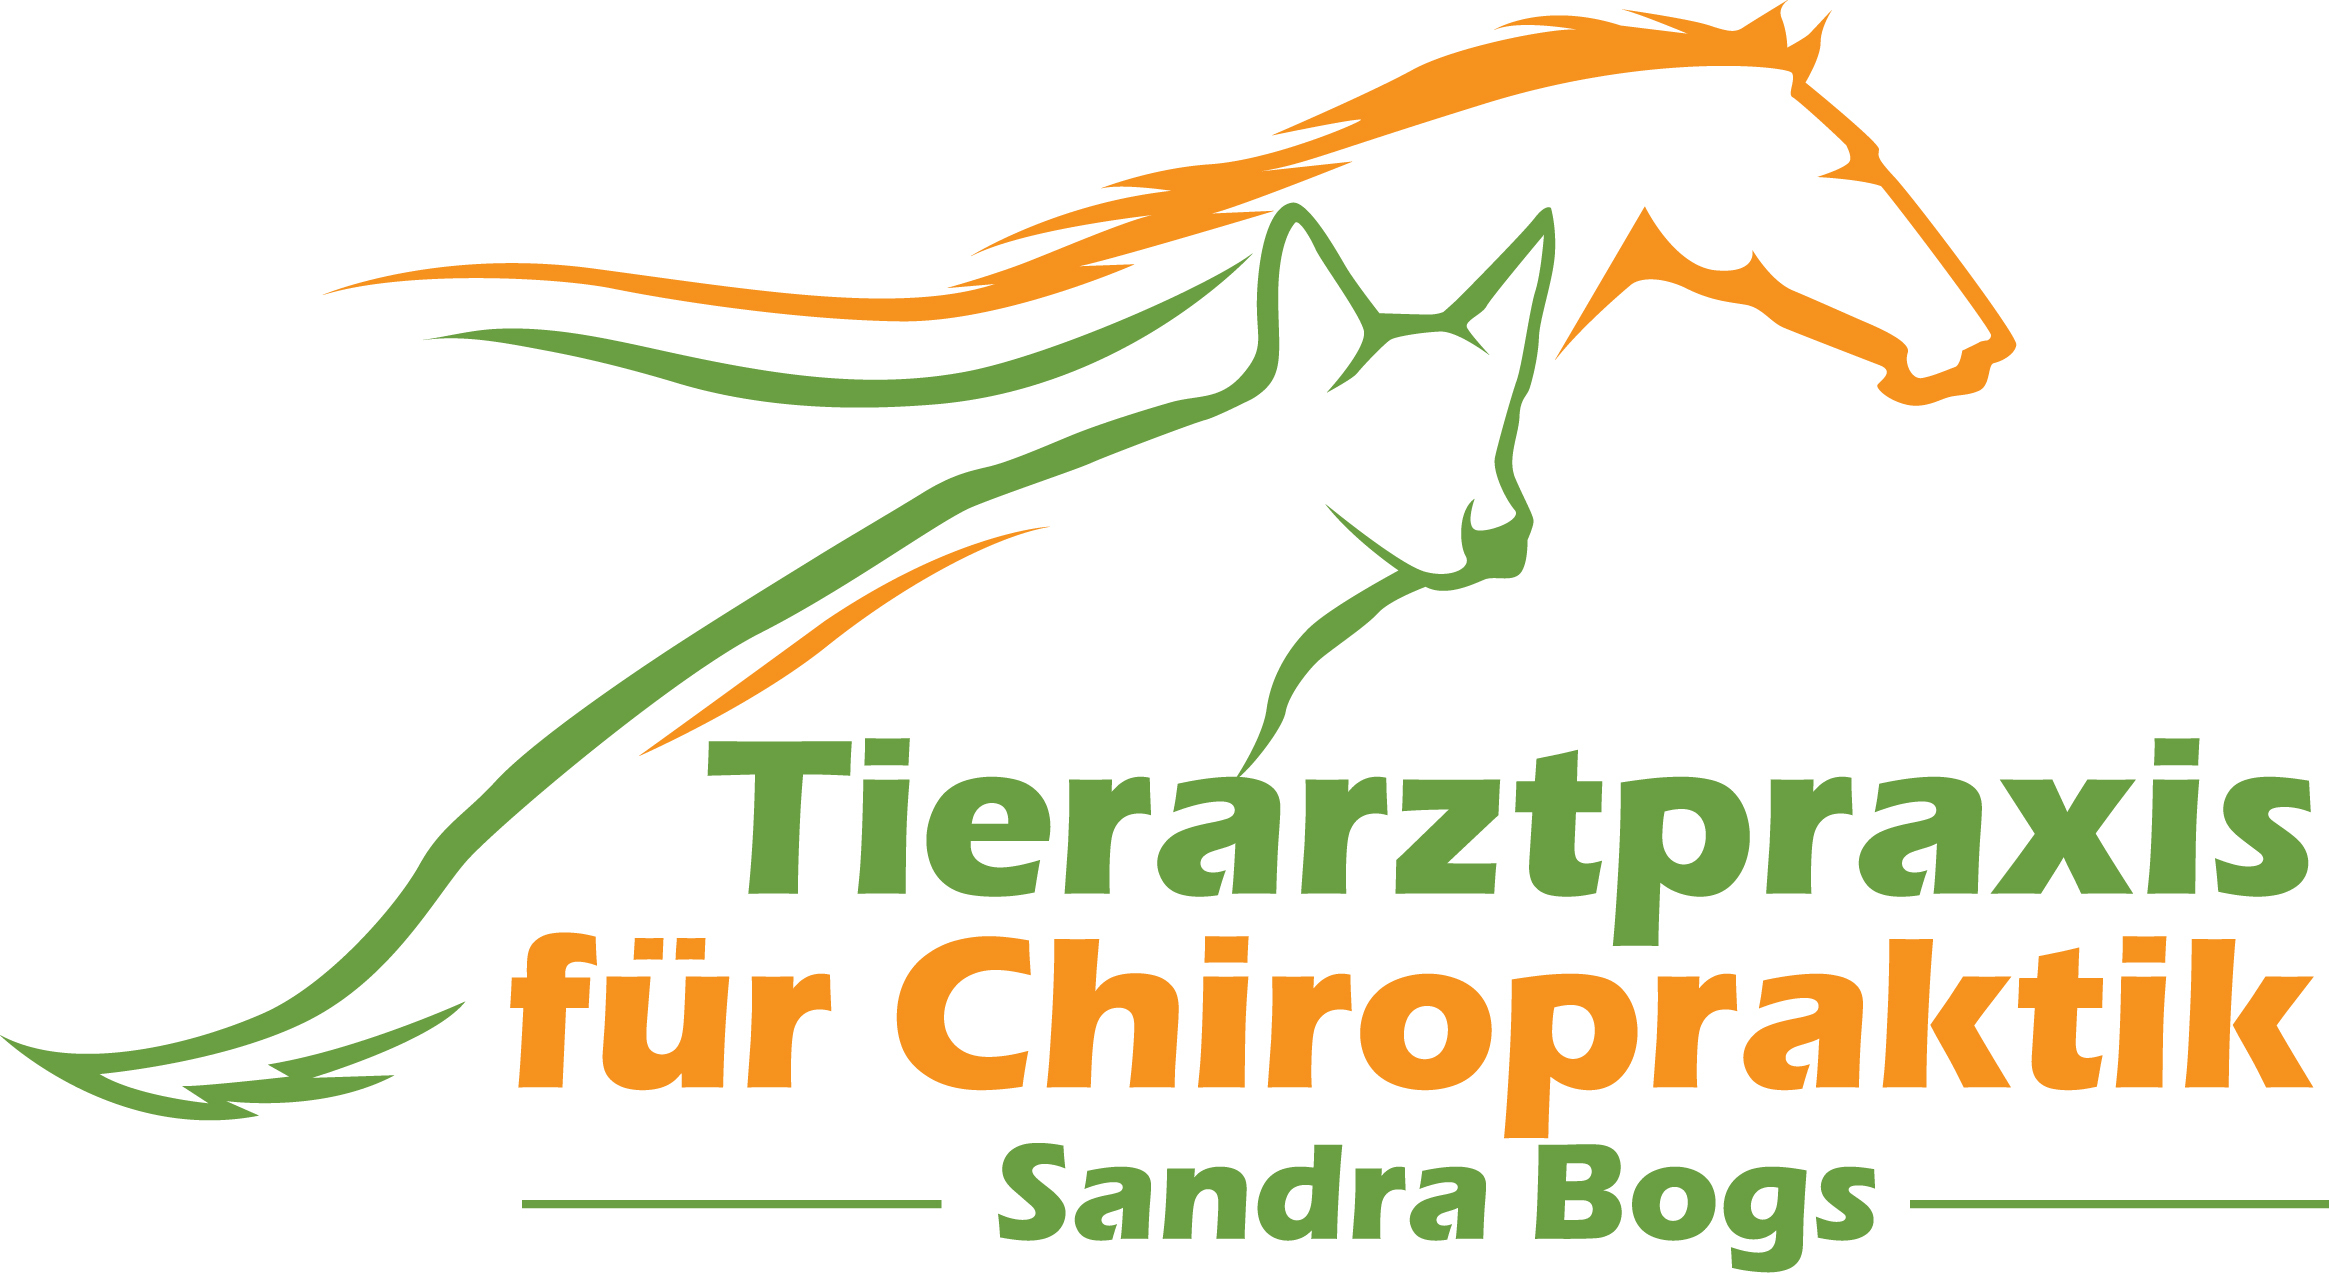 Praxis für Chiropraktik, Tierarzt, Tierchiropraktik, Baden-Württemberg, Hessen, Rheinland-Pfalz, Mannheim, Heidelberg